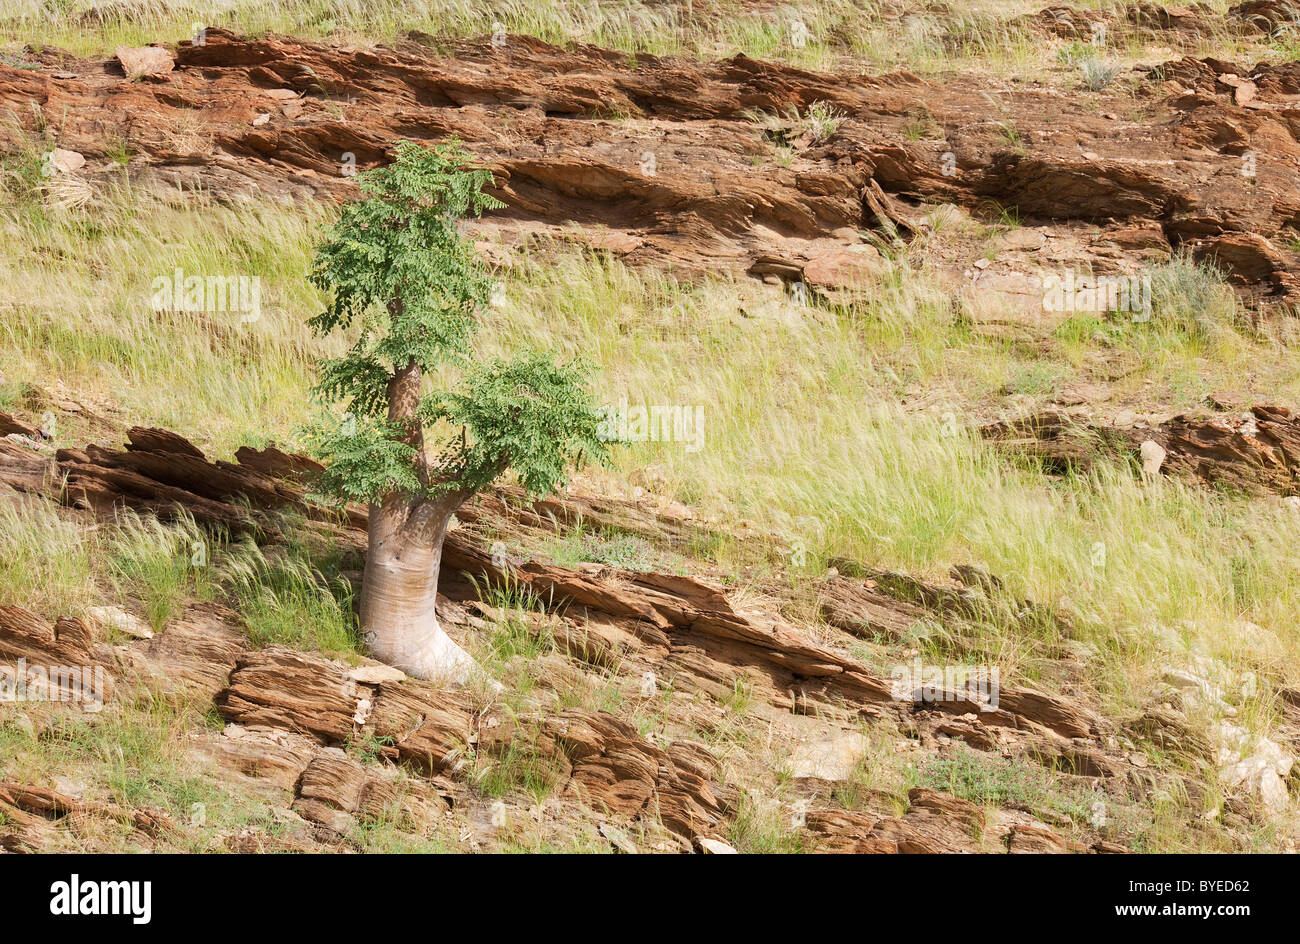 Moringa Tree (Moringa ovalifolia). Nel mese di marzo durante la stagione delle piogge con vegetazione verde. Kuiseb Canyon, il Parco Namib-Naukluft Foto Stock